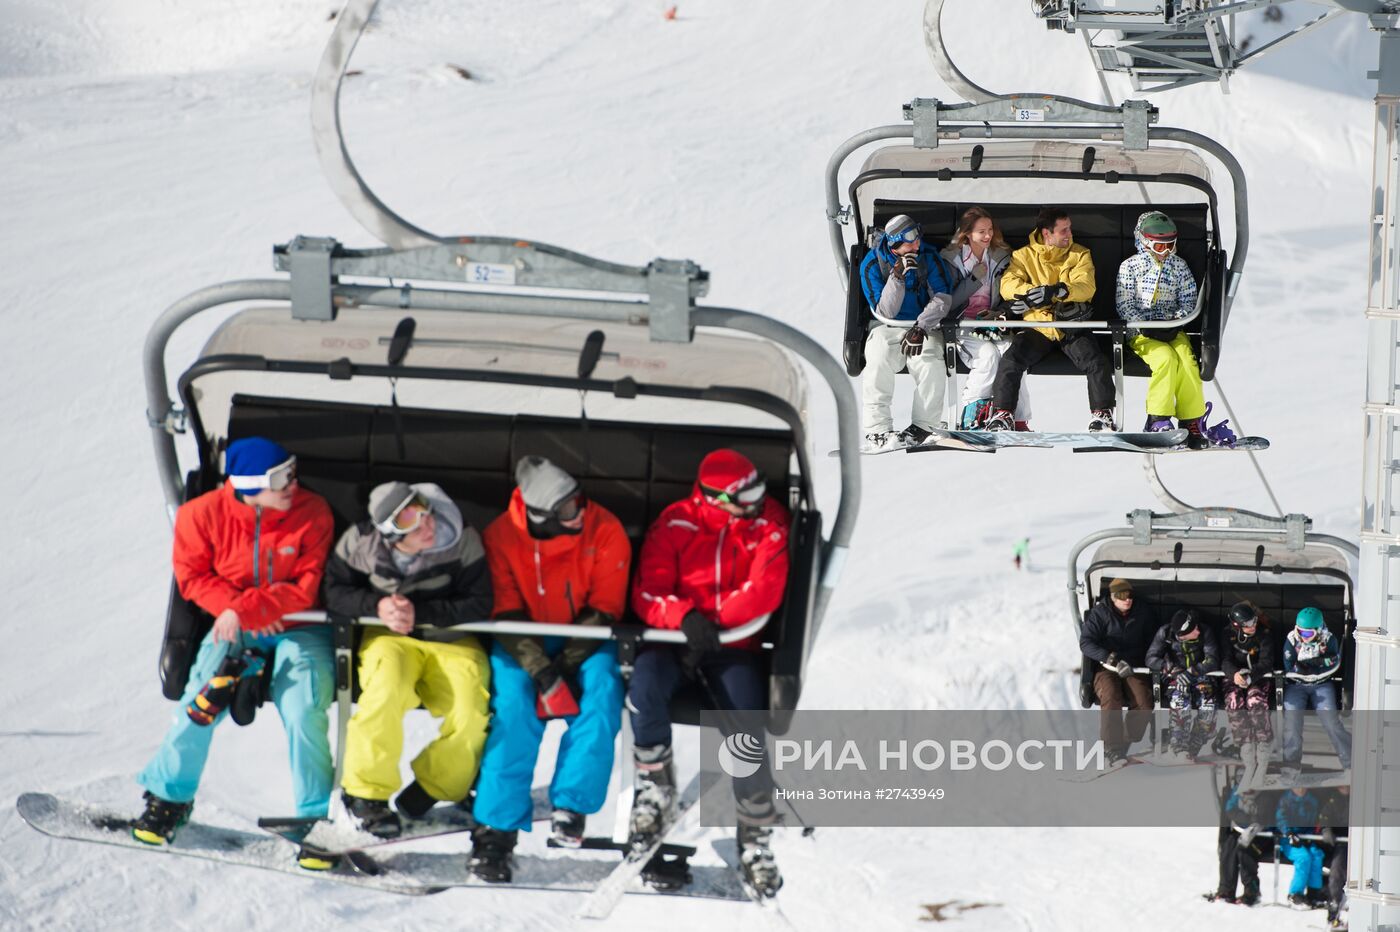 Открытие горнолыжного сезона в Сочи